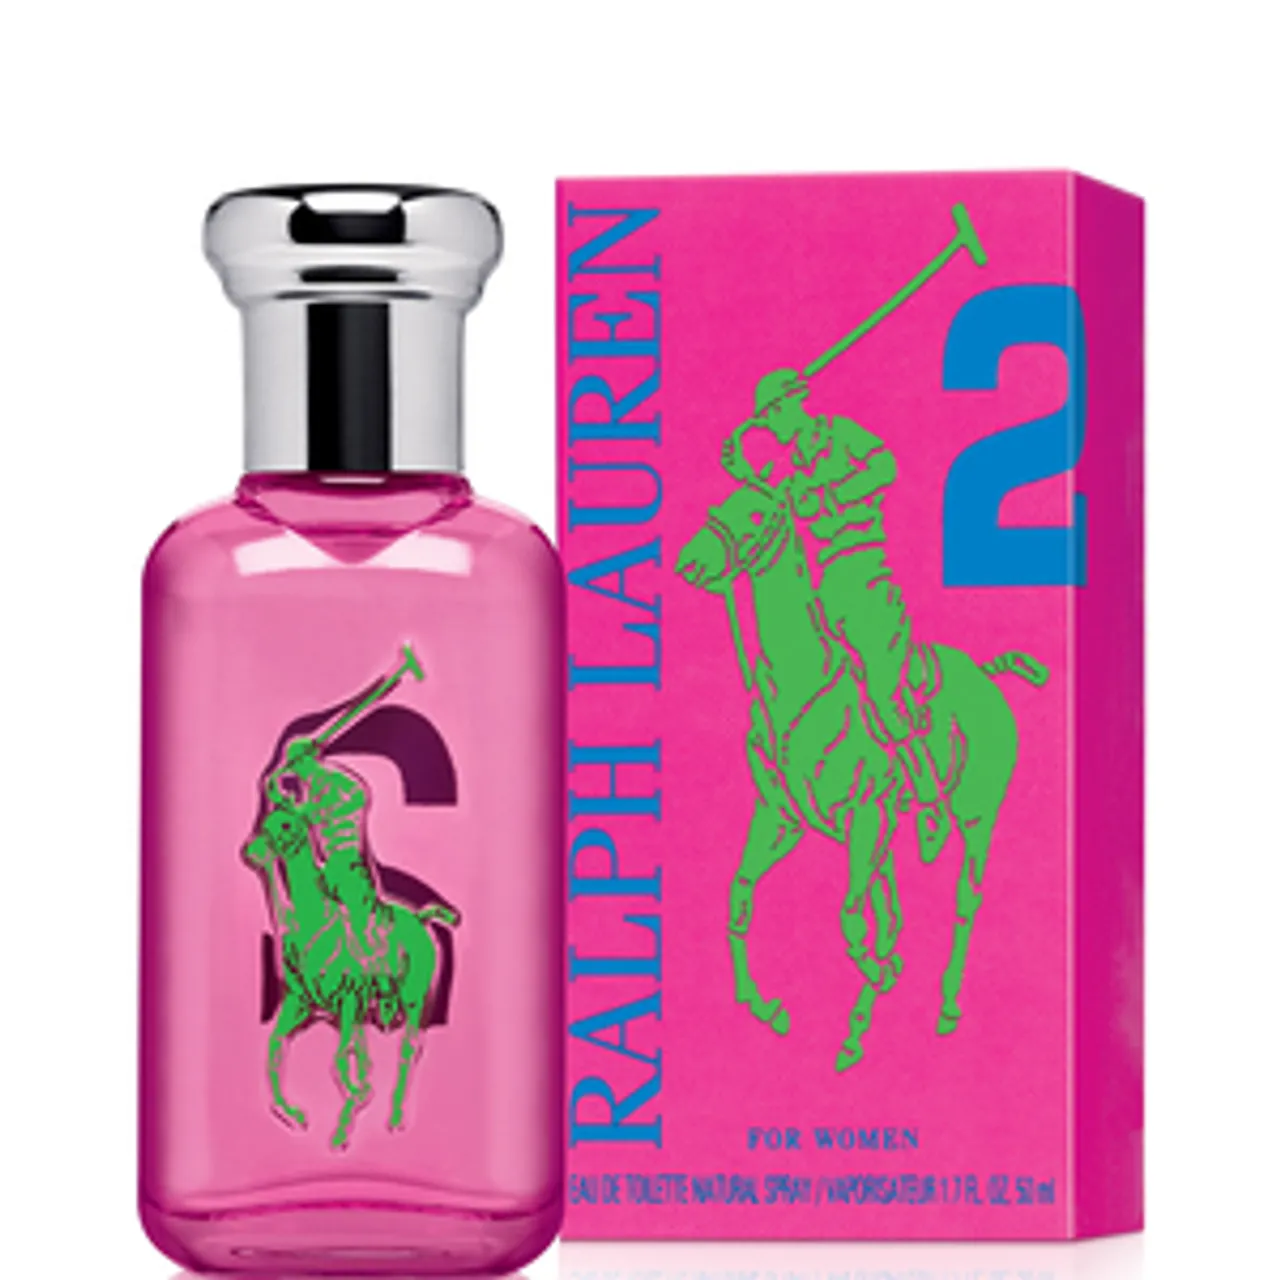 Ralph Lauren Big Pony Pink 2 For Her EAU DE TOILETTE 50 ML